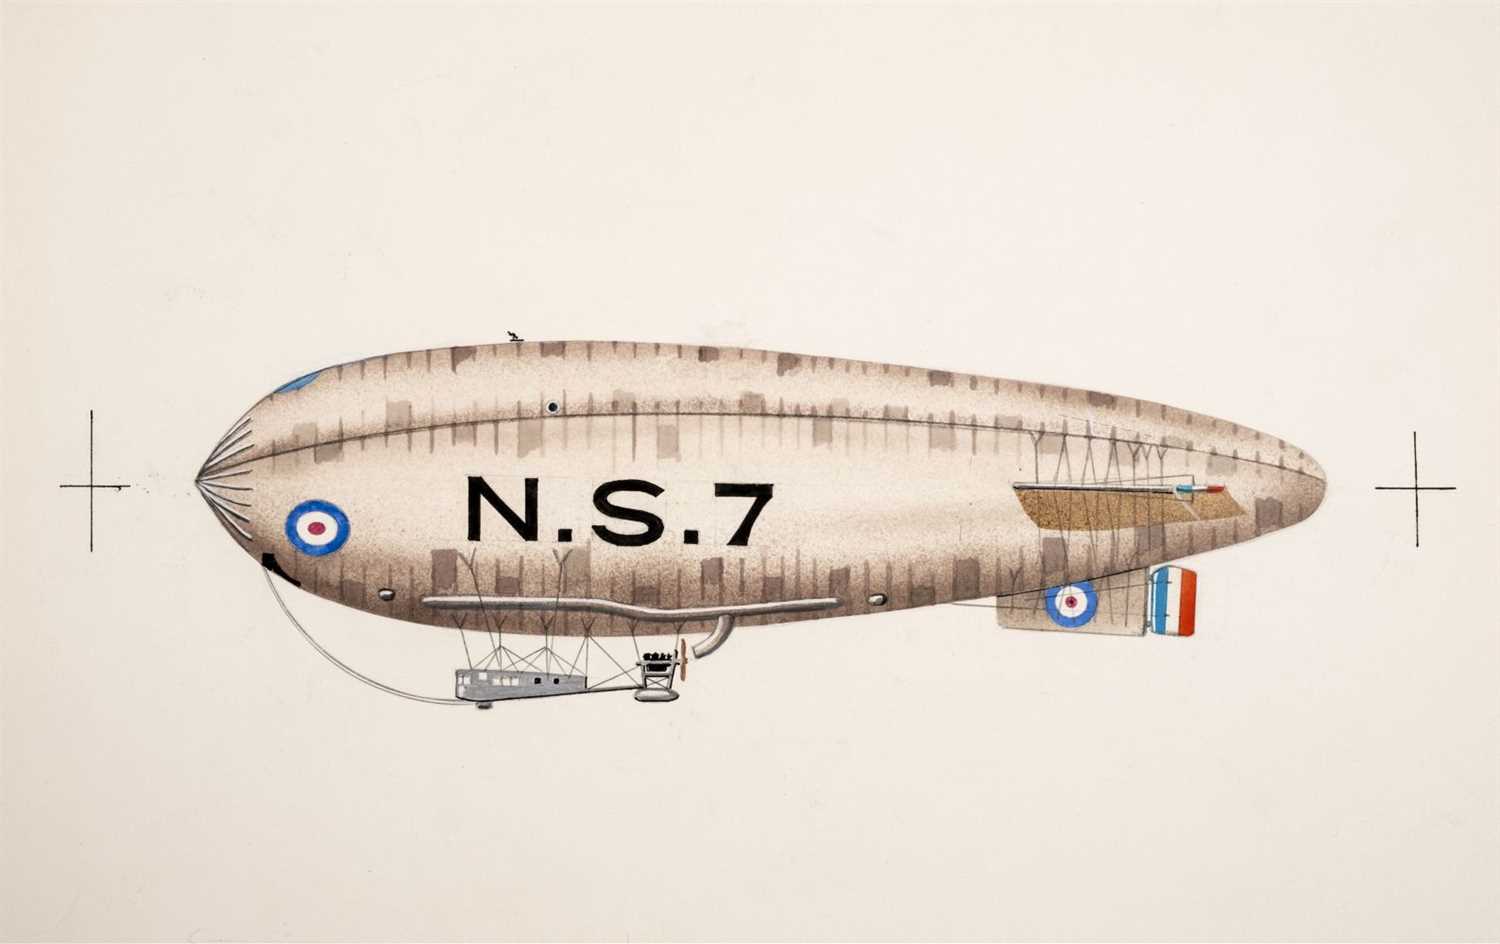 Lot 42 - Airships, Rigid & Non-Rigid Dirigibles, 1900-1914. A group of original artwork illustrations